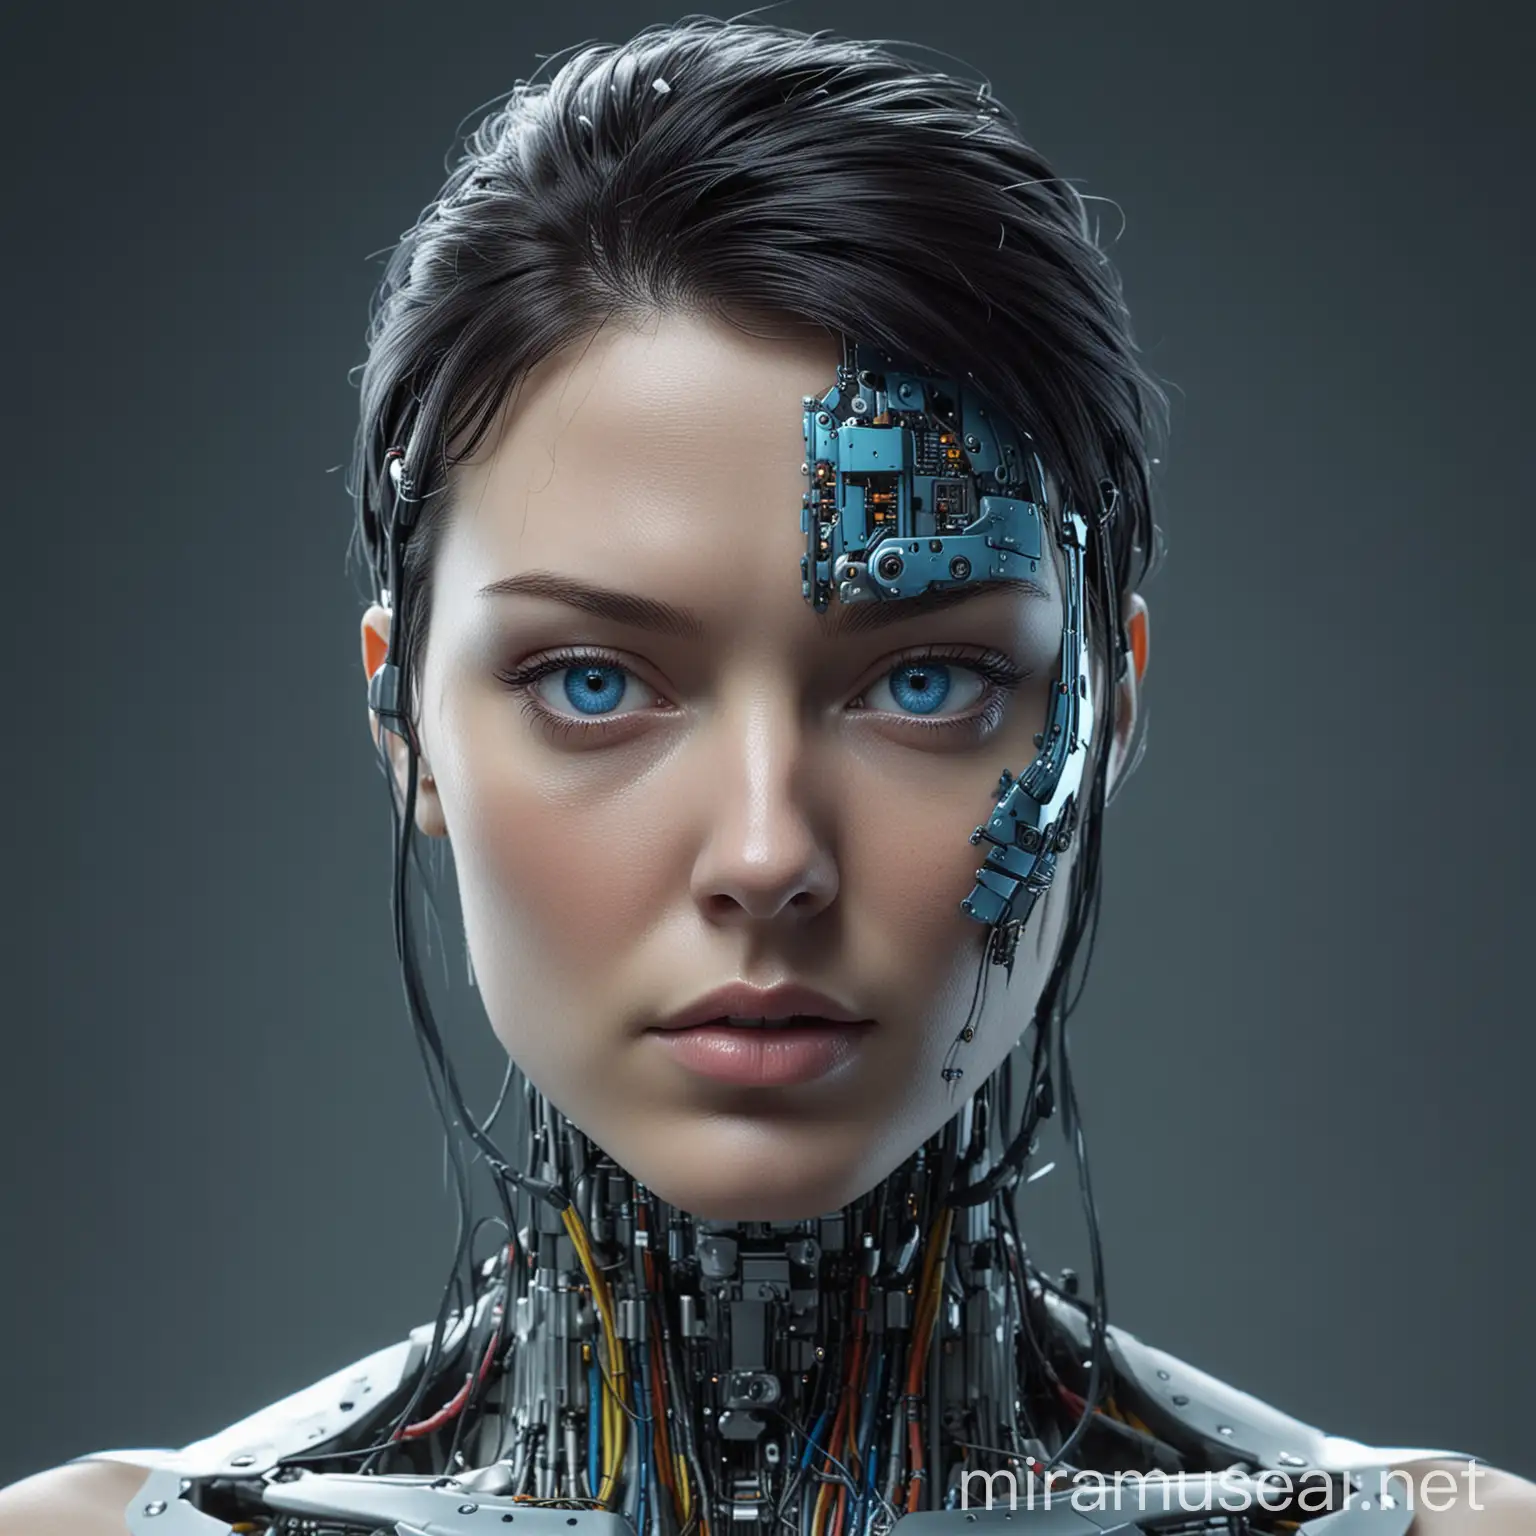 Cyberpunk European Woman with Brilliant Blue Cyborg Eyes